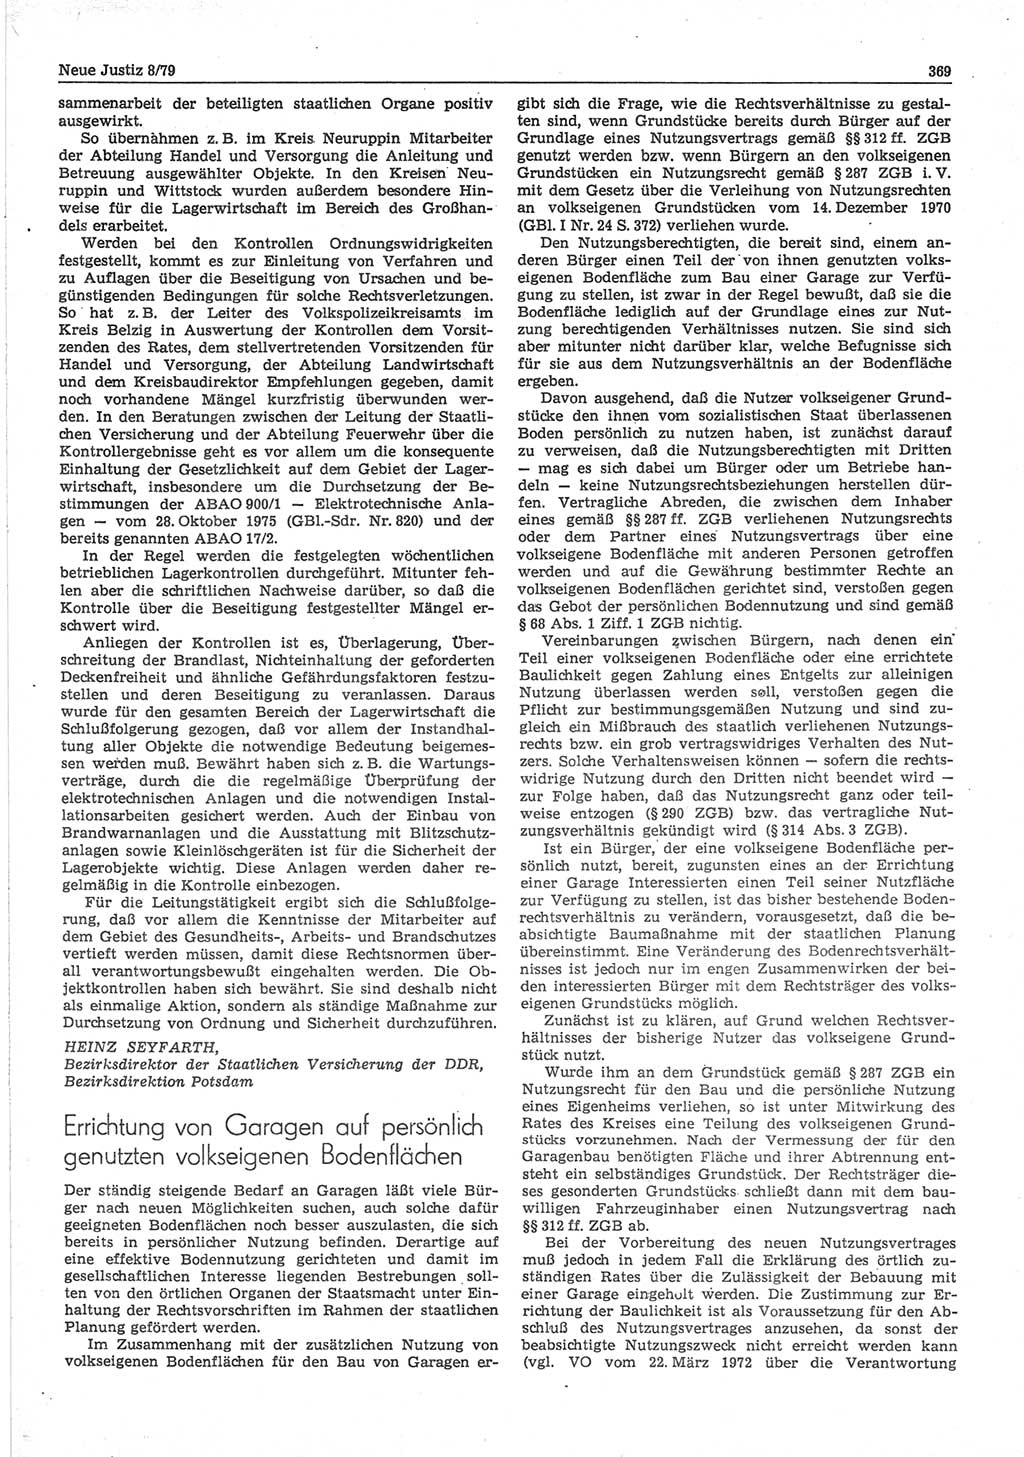 Neue Justiz (NJ), Zeitschrift für sozialistisches Recht und Gesetzlichkeit [Deutsche Demokratische Republik (DDR)], 33. Jahrgang 1979, Seite 369 (NJ DDR 1979, S. 369)